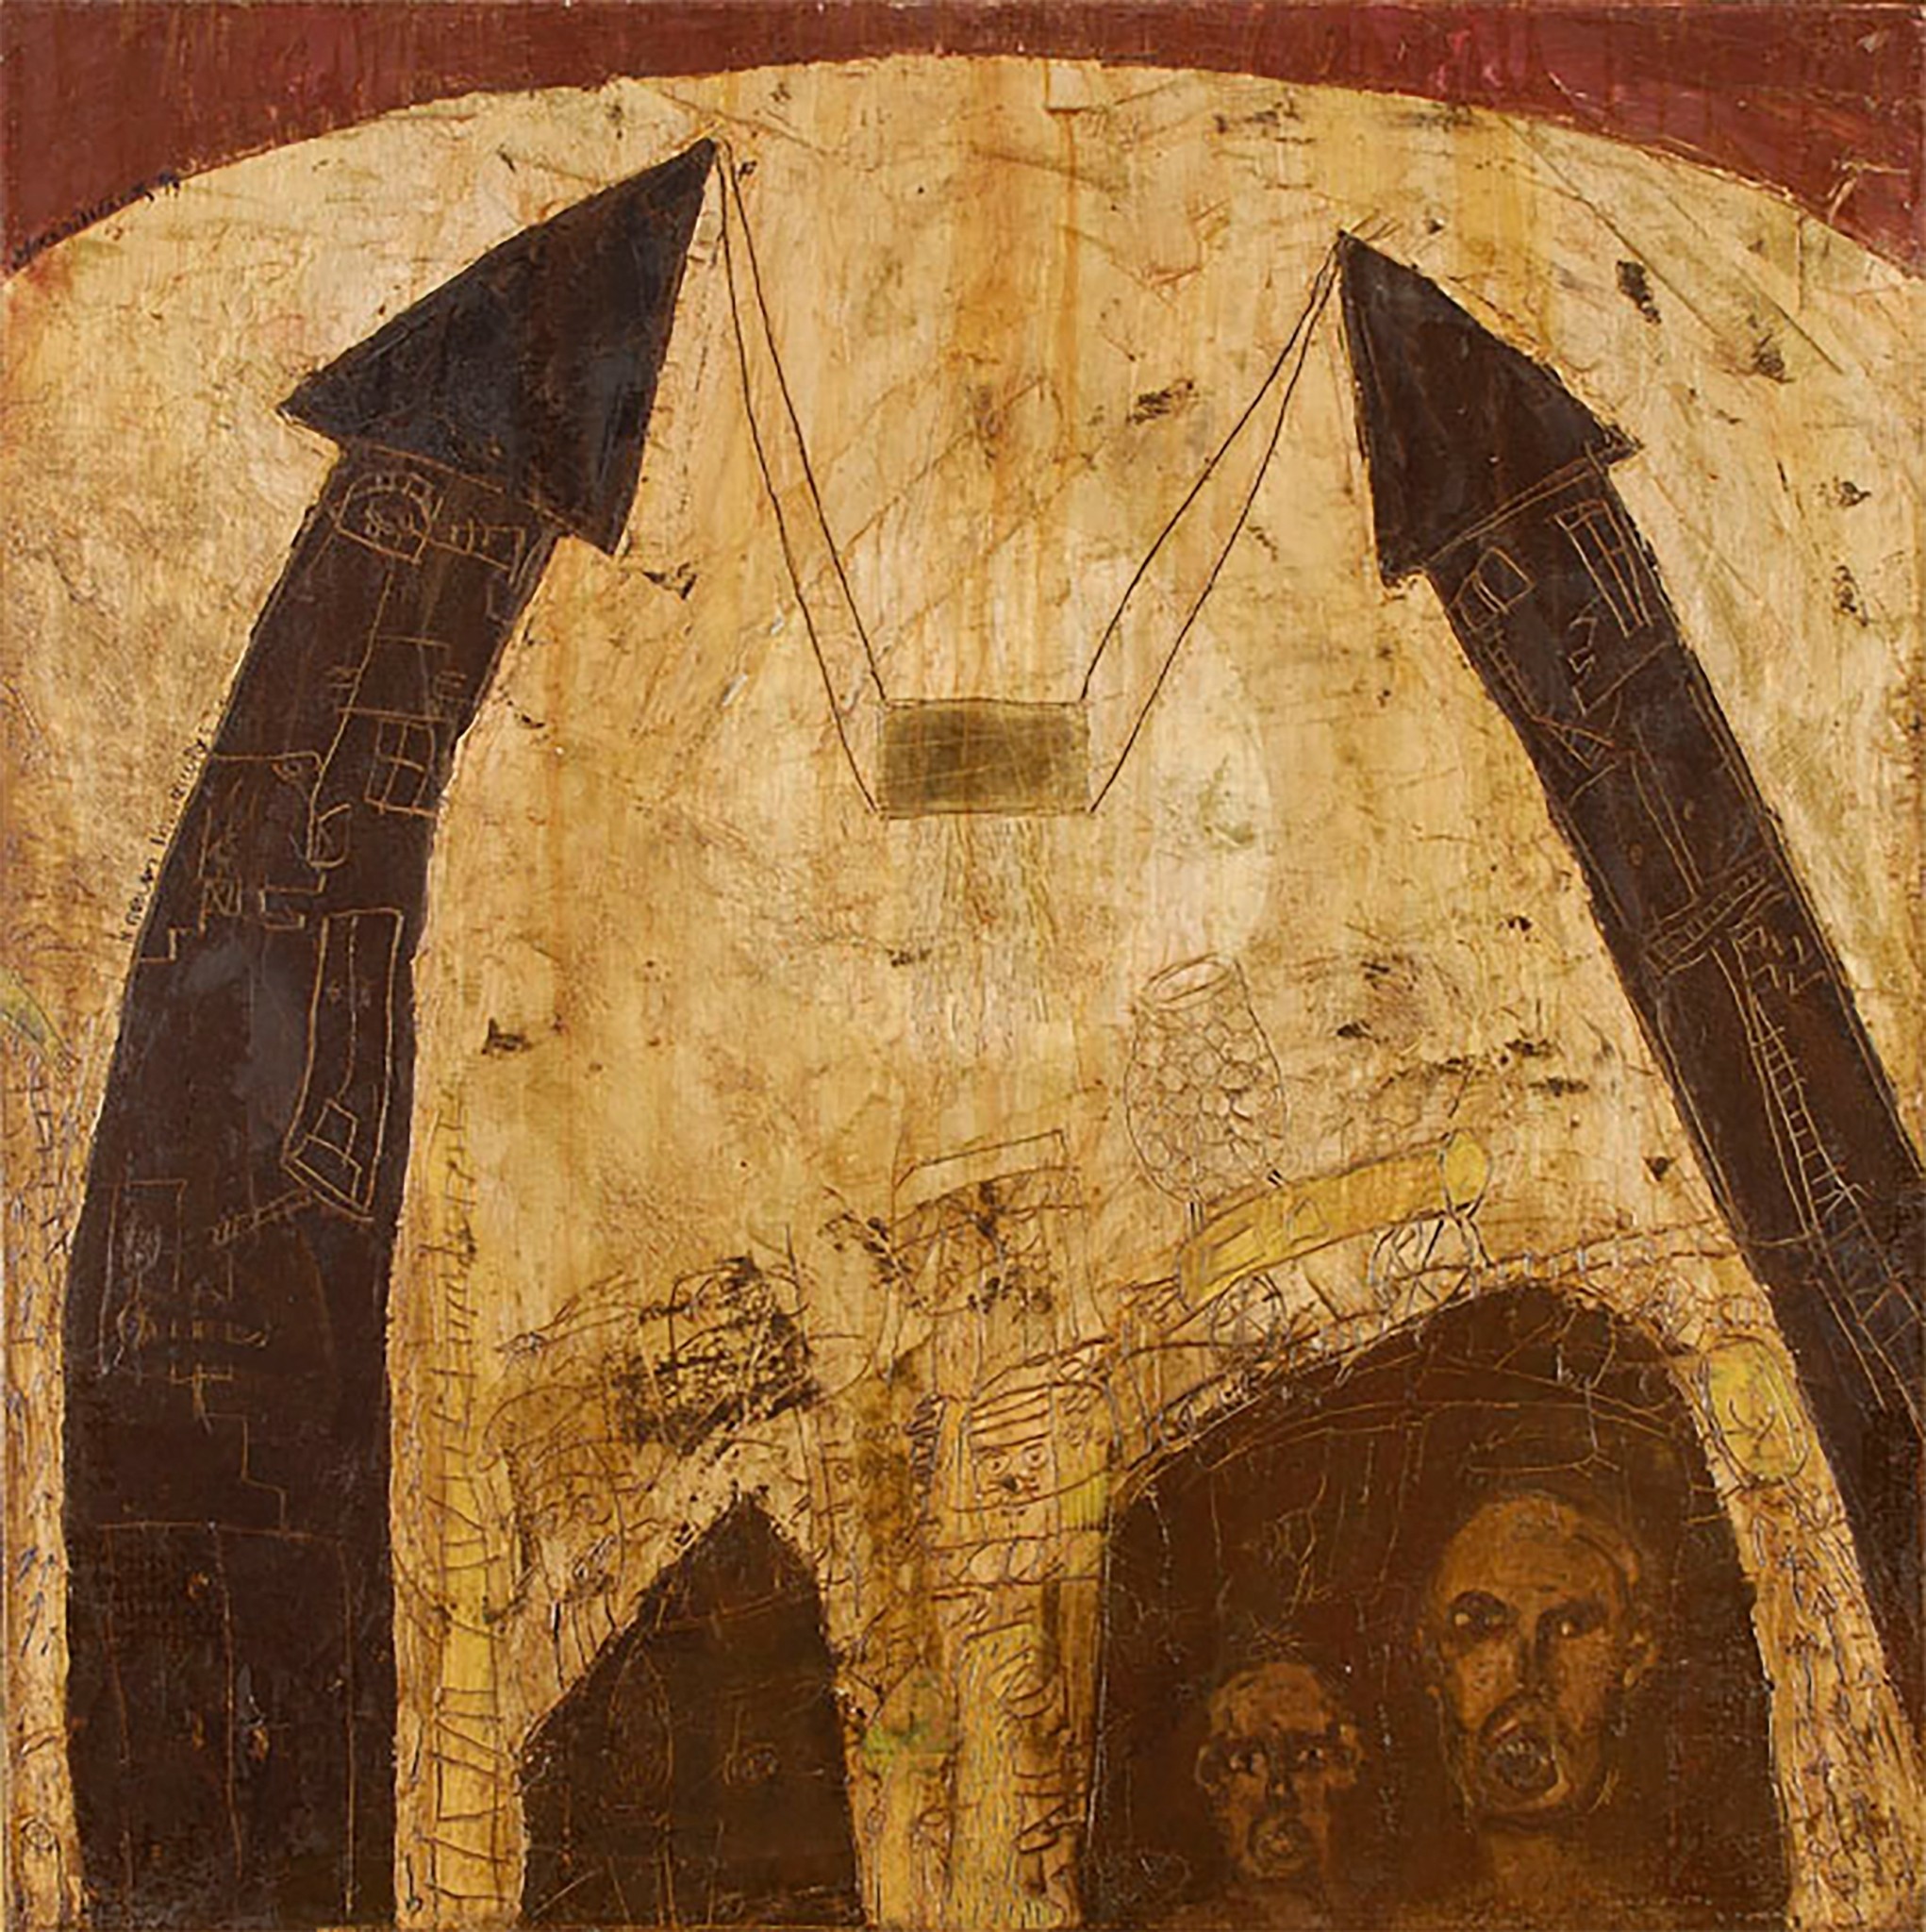 Η συλλογή έργων Τέχνης του Χρύσανθου Πανά για πρώτη φορά σε δημόσια θέα